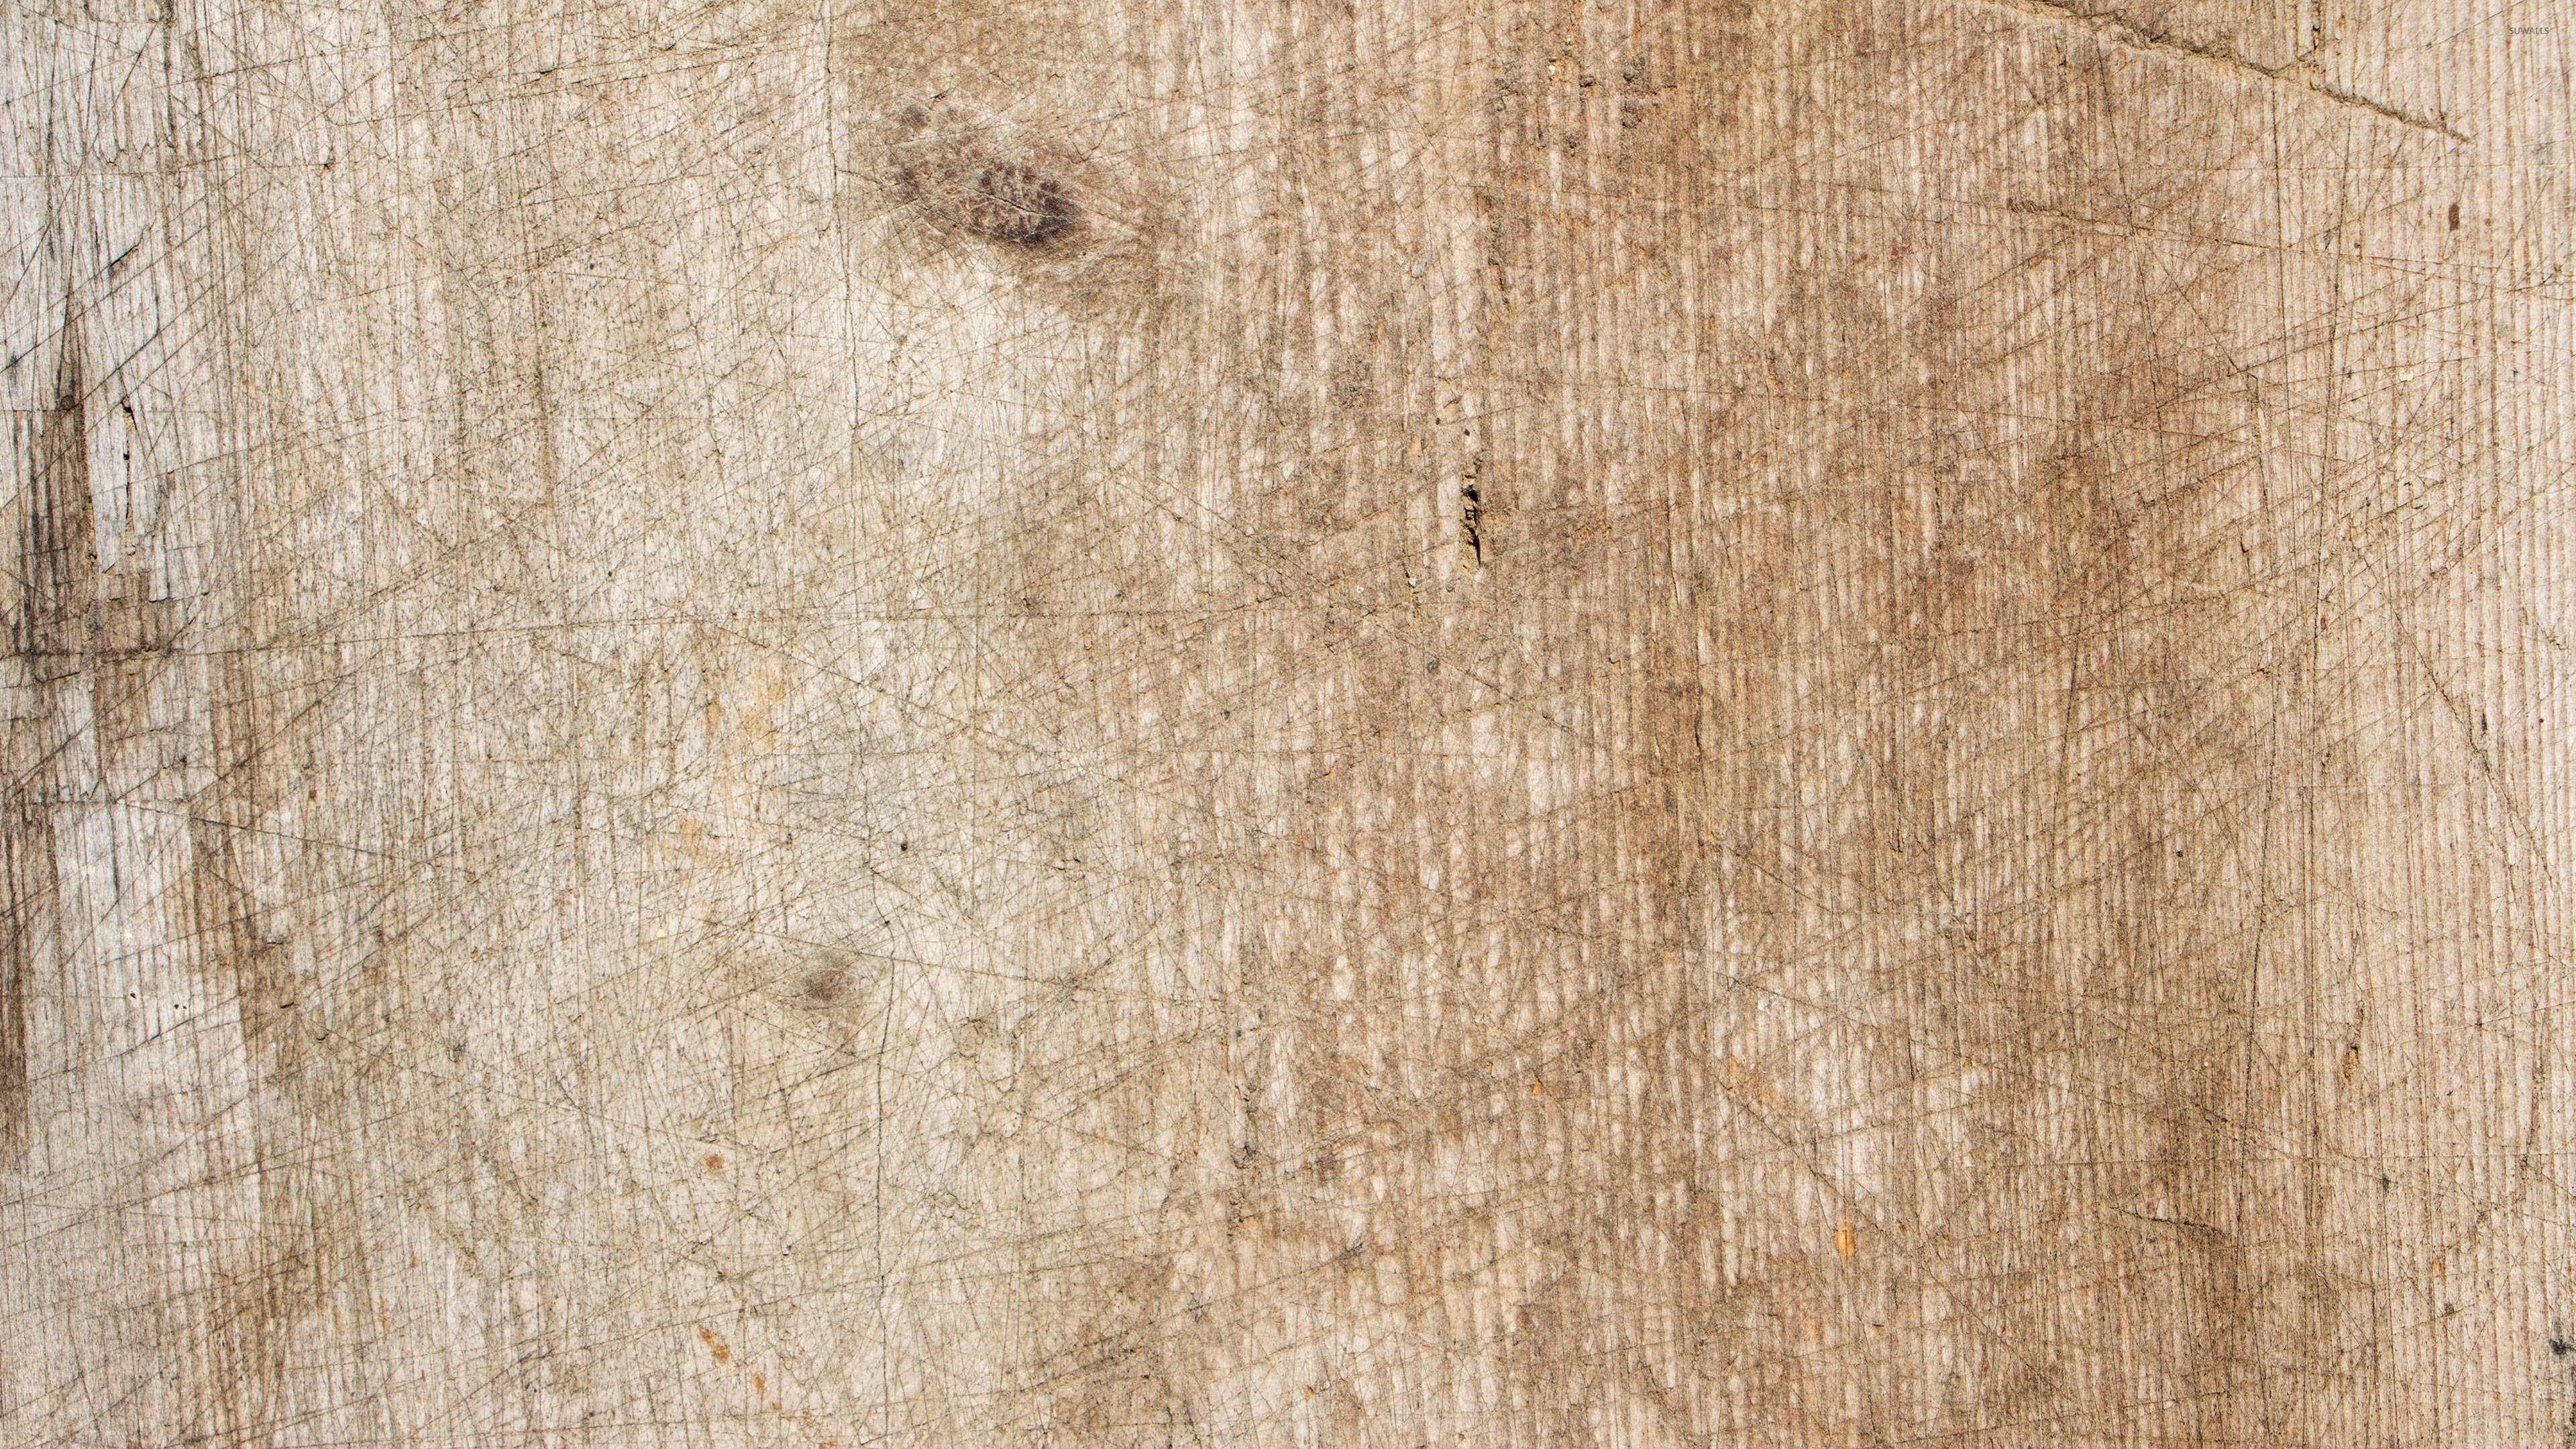 papel pintado viejo,madera,suelos de madera,marrón,suelo,piso